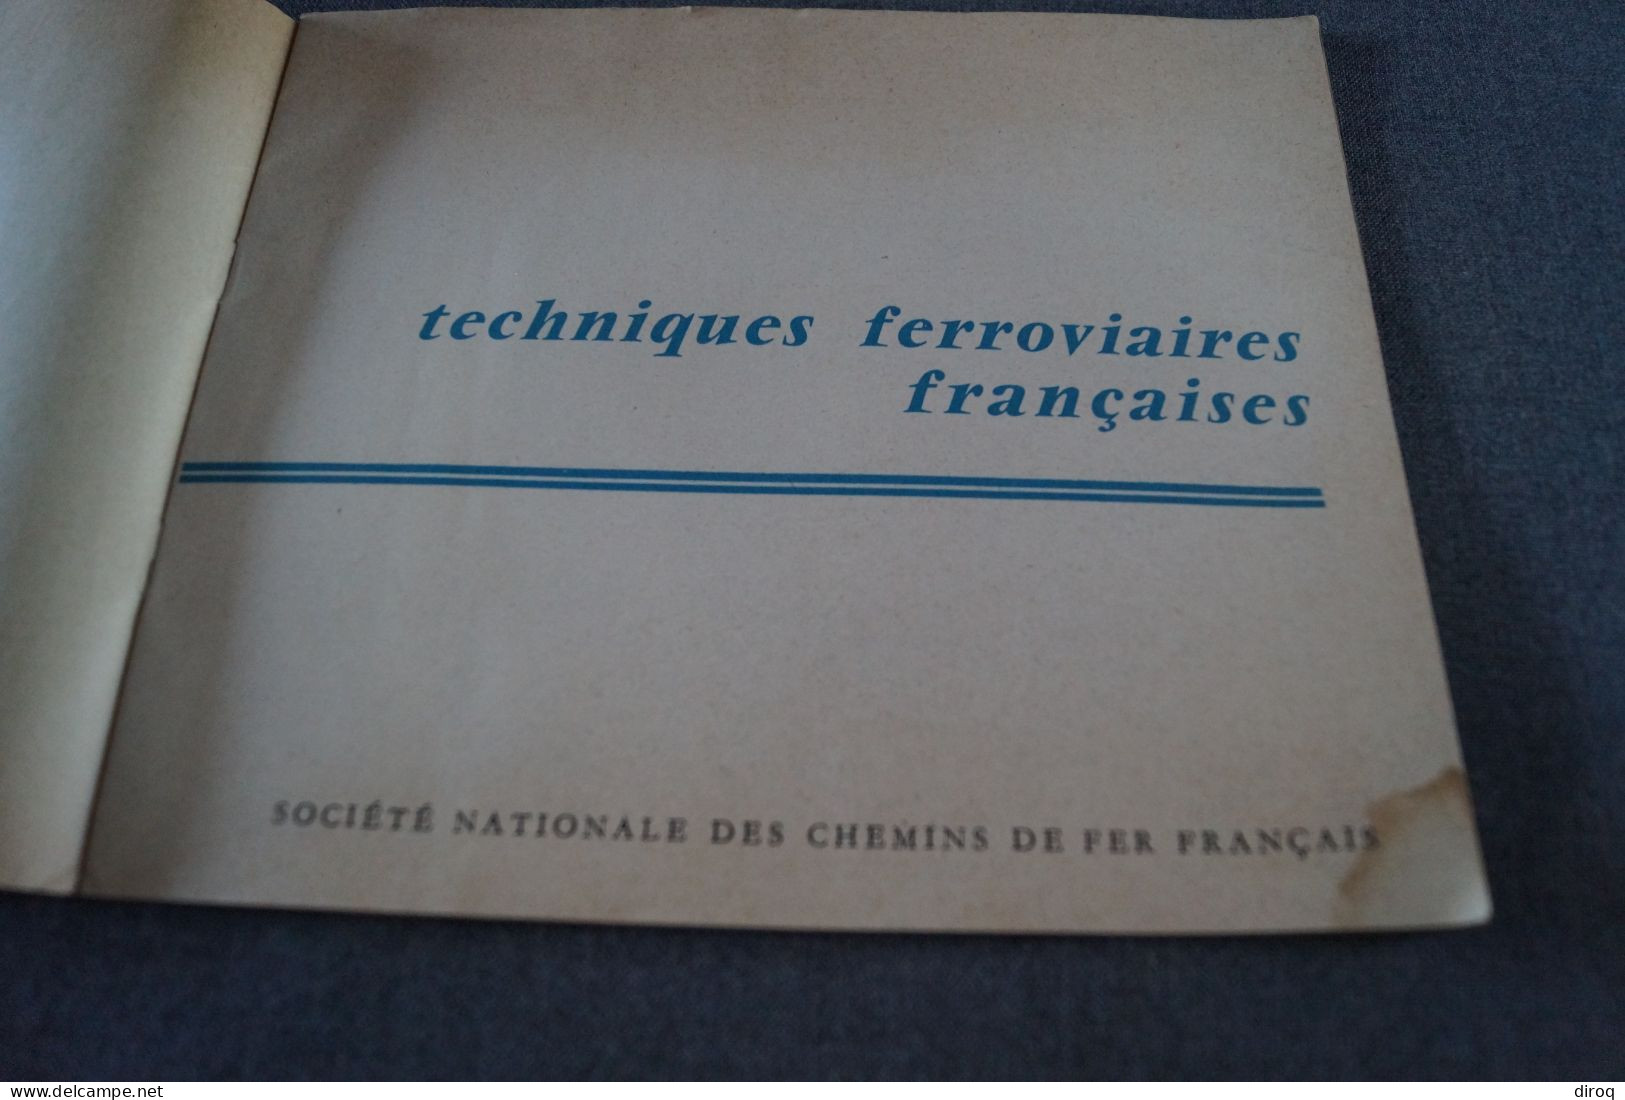 Expo 1958, Bruxelles,publicitaire,LChemin De Fer Français,24 Pages,21 Cm. Sur 18 Cm. - Pubblicitari